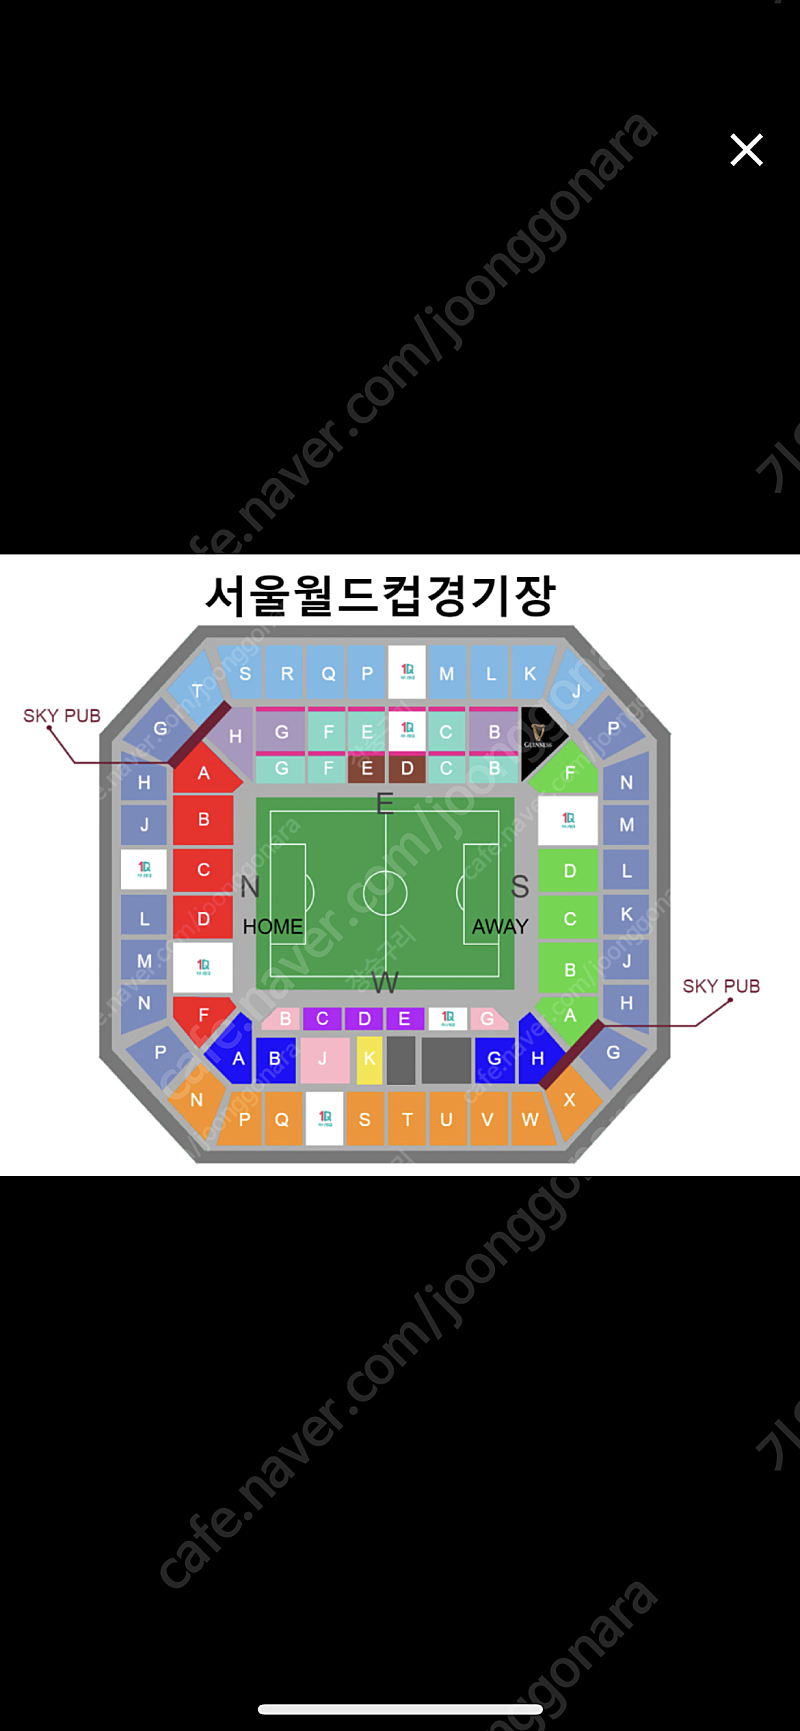 한국 이집트 축구 2등석s 2연석